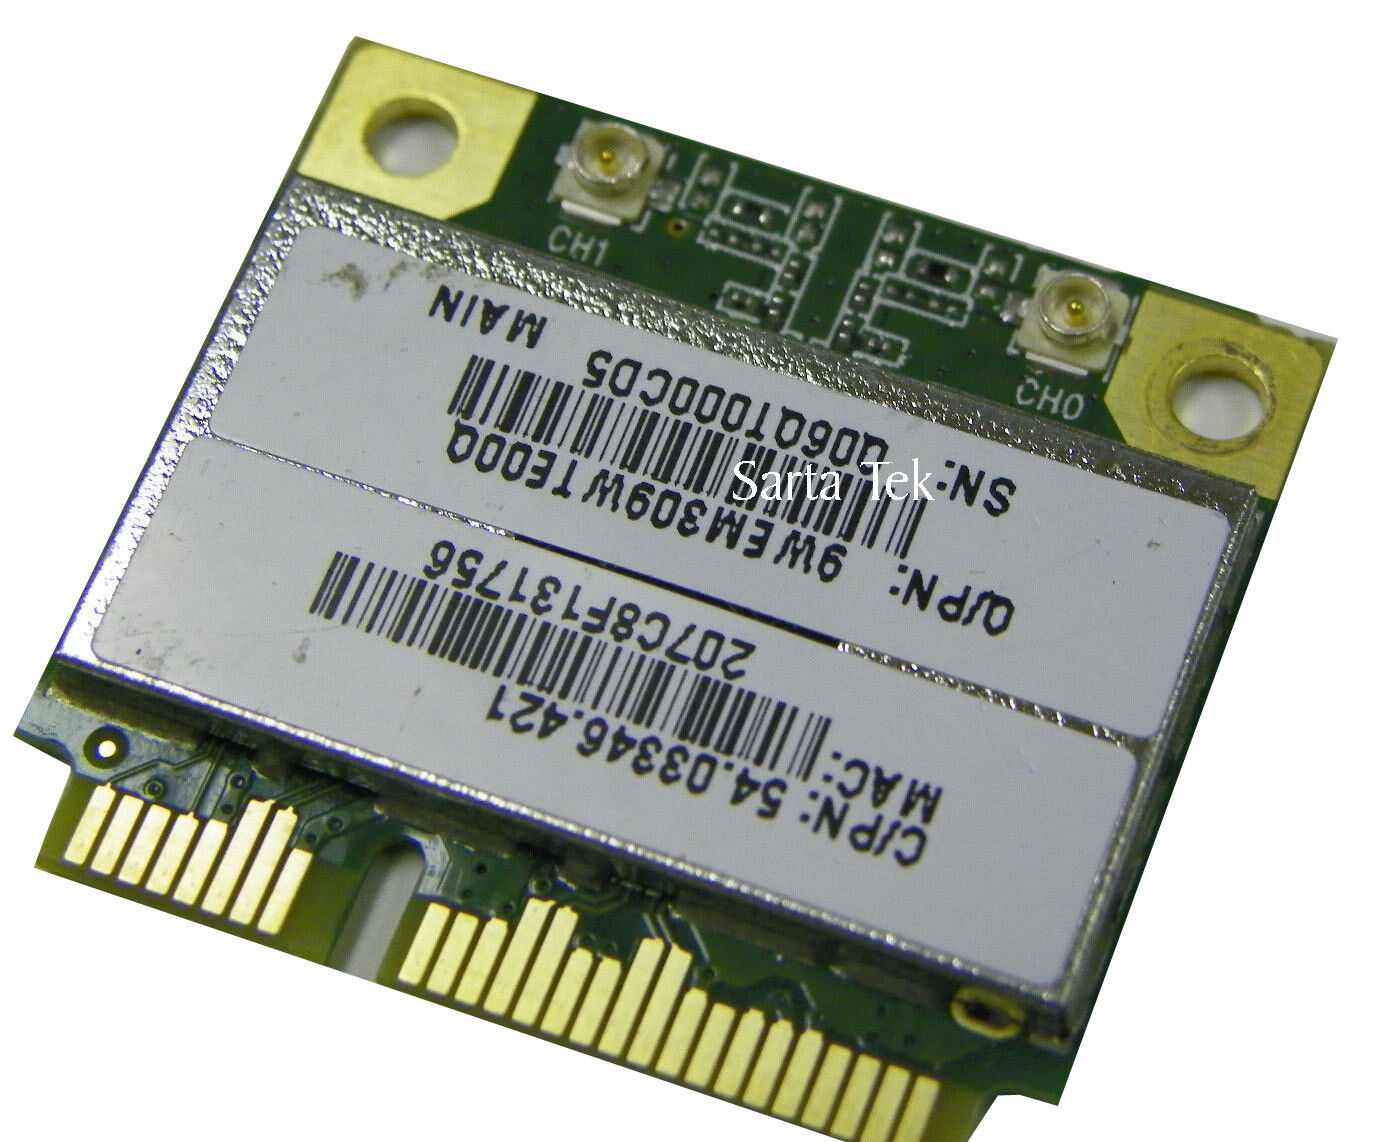  Quanta Microsystems EM309 802.11b/g/n PCI-E Half Atheros AR5B97 AR9287